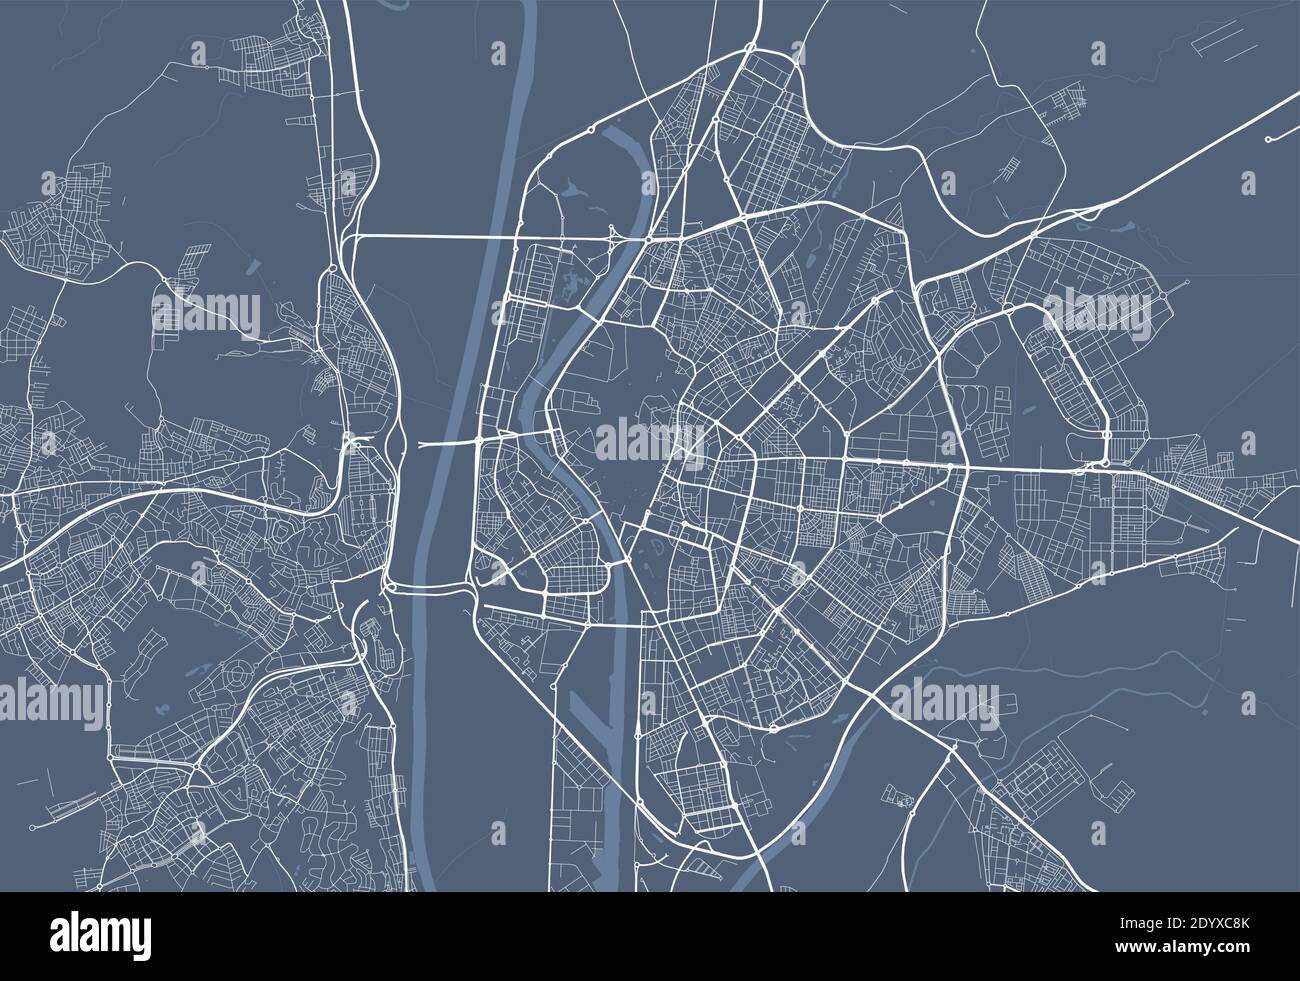 Poster della mappa della città di Siviglia. Cartellone della mappa stradale di Siviglia. Illustrazione vettoriale della mappa di Siviglia. Illustrazione Vettoriale